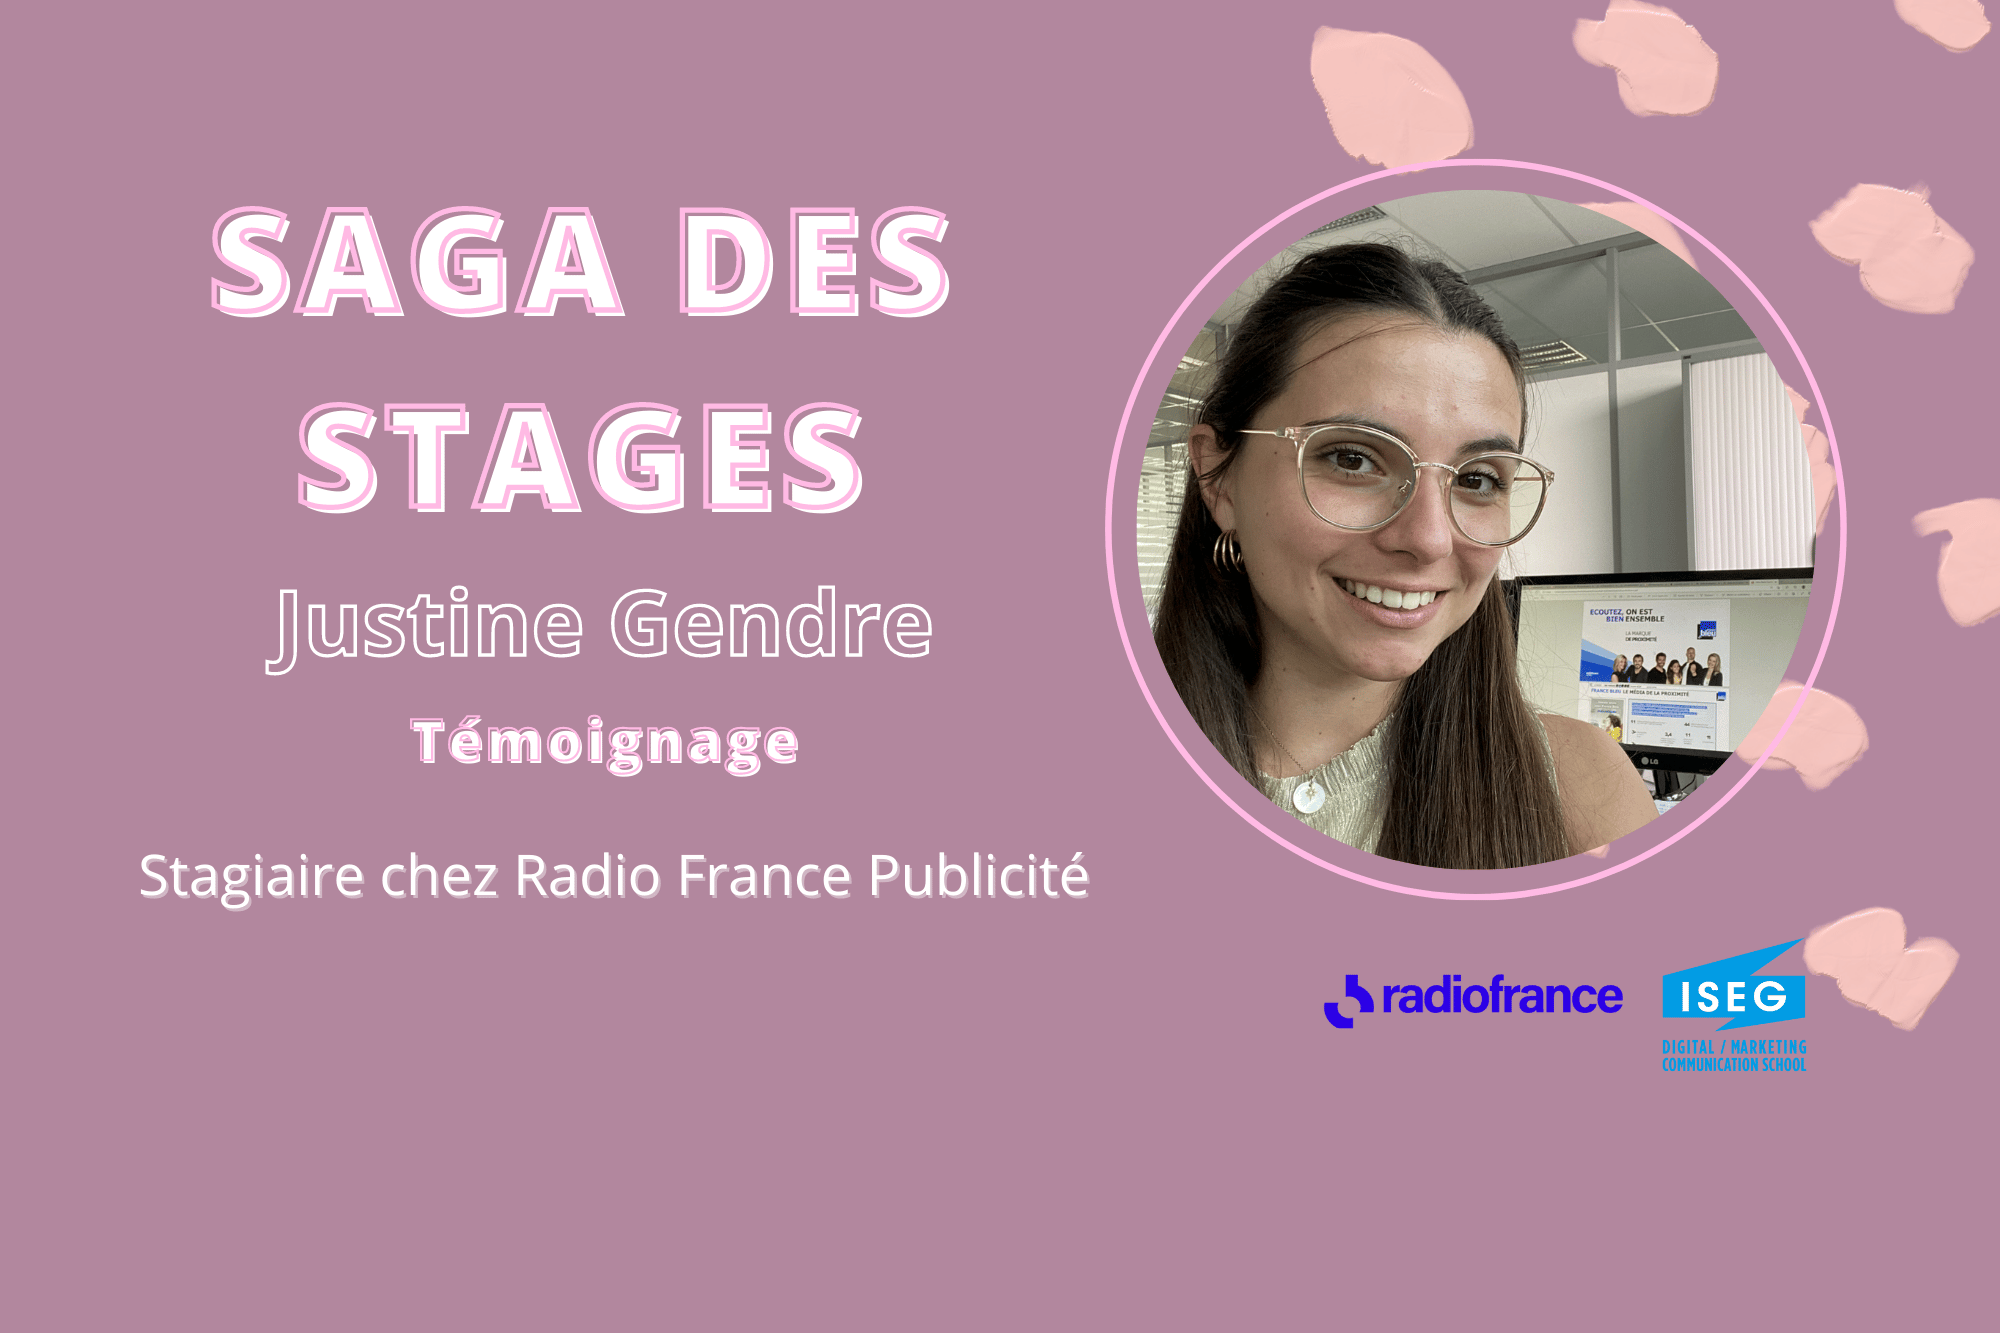 SAGA DES STAGES : Rencontre avec Justine Gendre en stage à Radio France